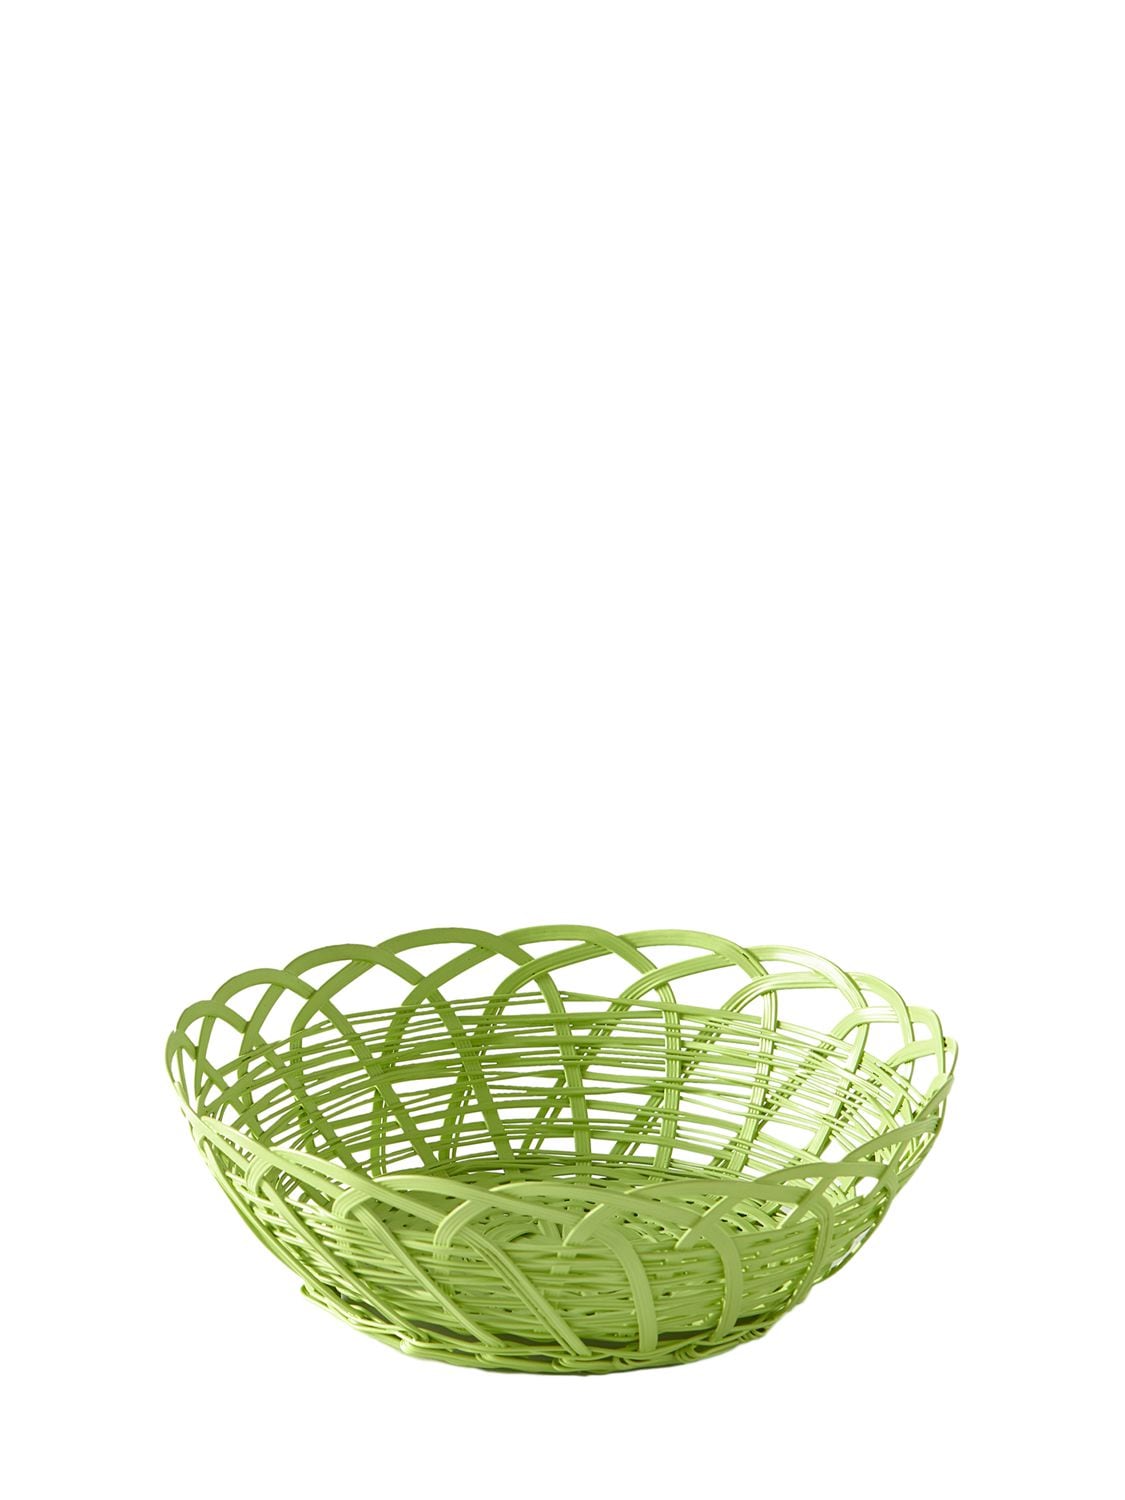 Polspotten Bakkie Iron Lace Basket In Green